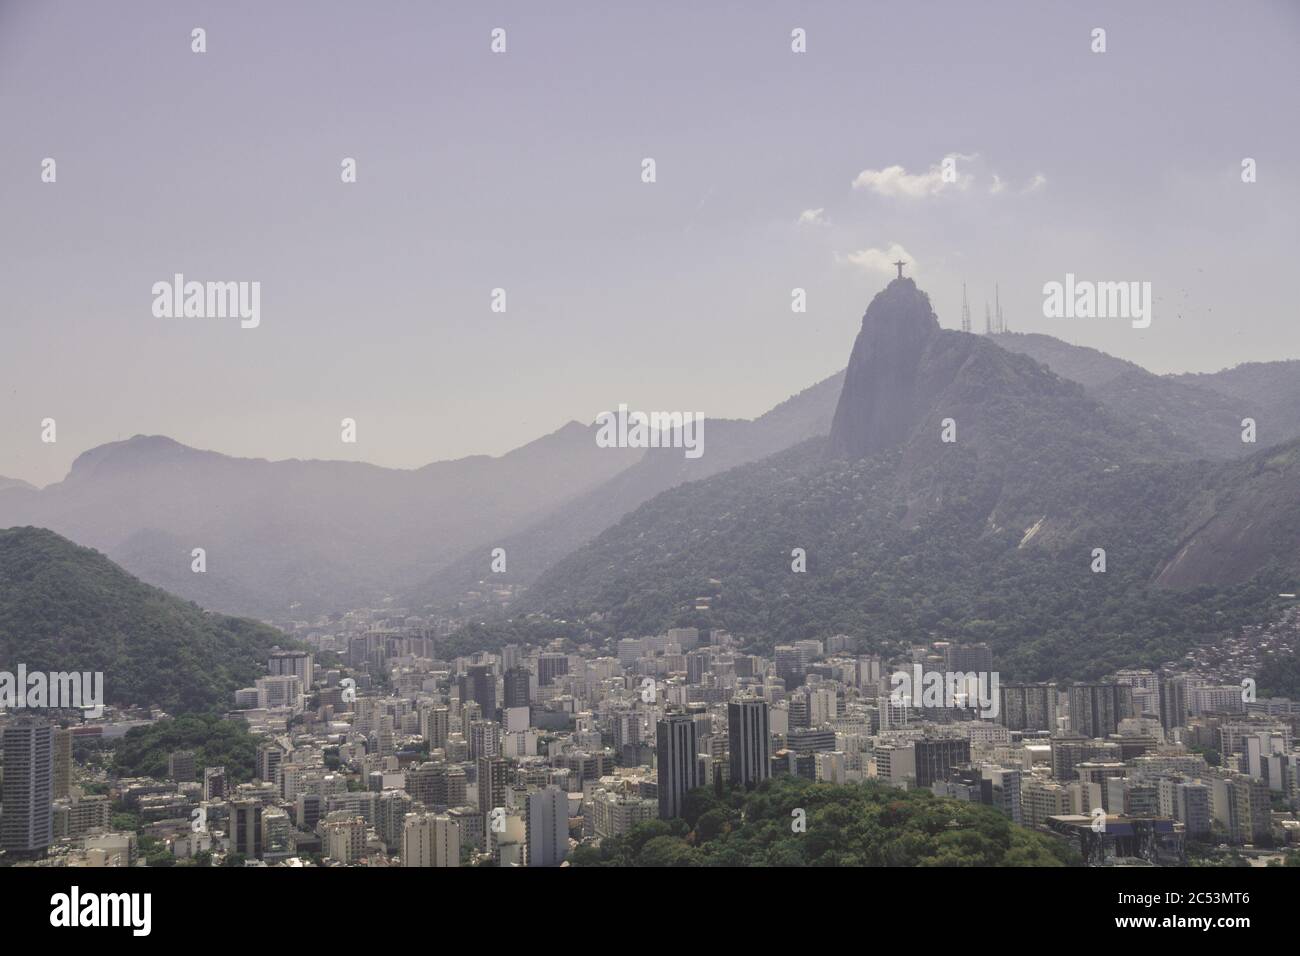 Cityscape of Rio de Janeiro, Brazil Stock Photo